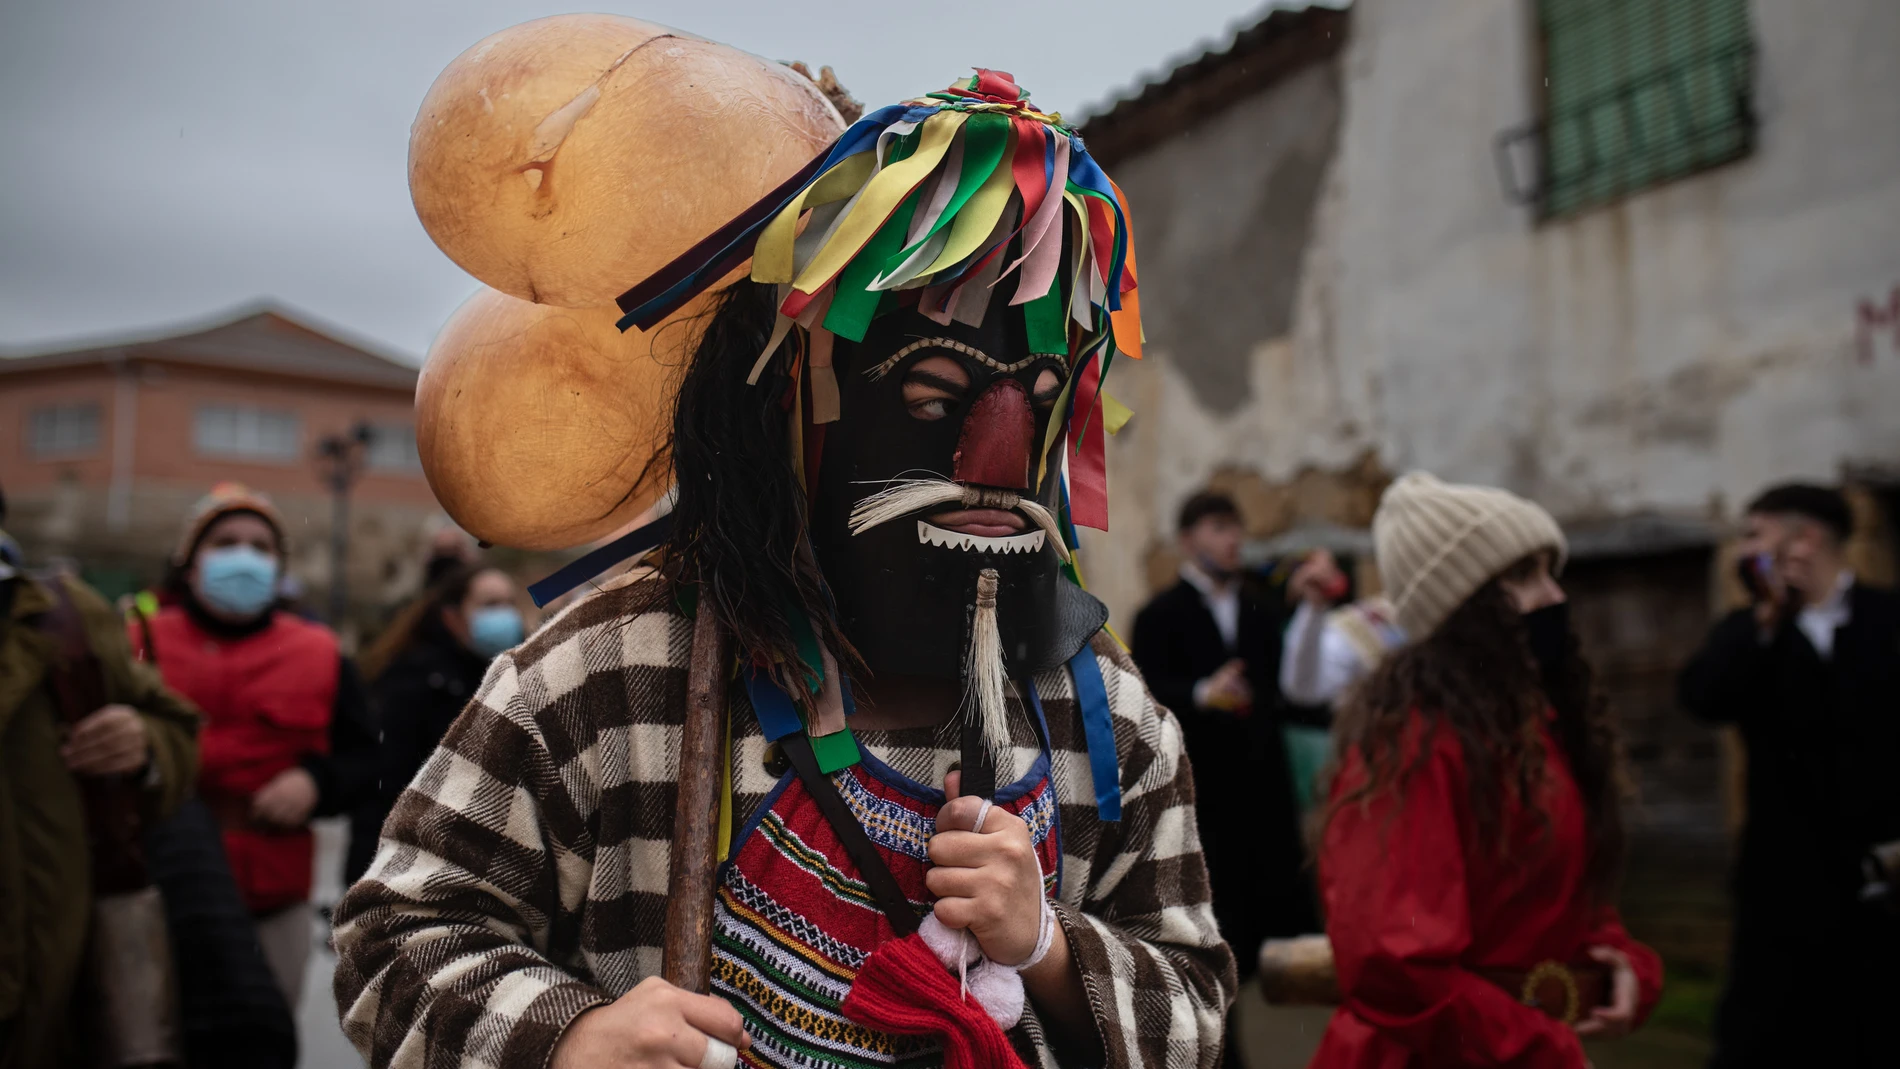 El zangarrón en la fiesta de la mascarada de invierno en Sanzoles, a 26 de diciembre de 2021, en Zamora, Castilla y León (España)